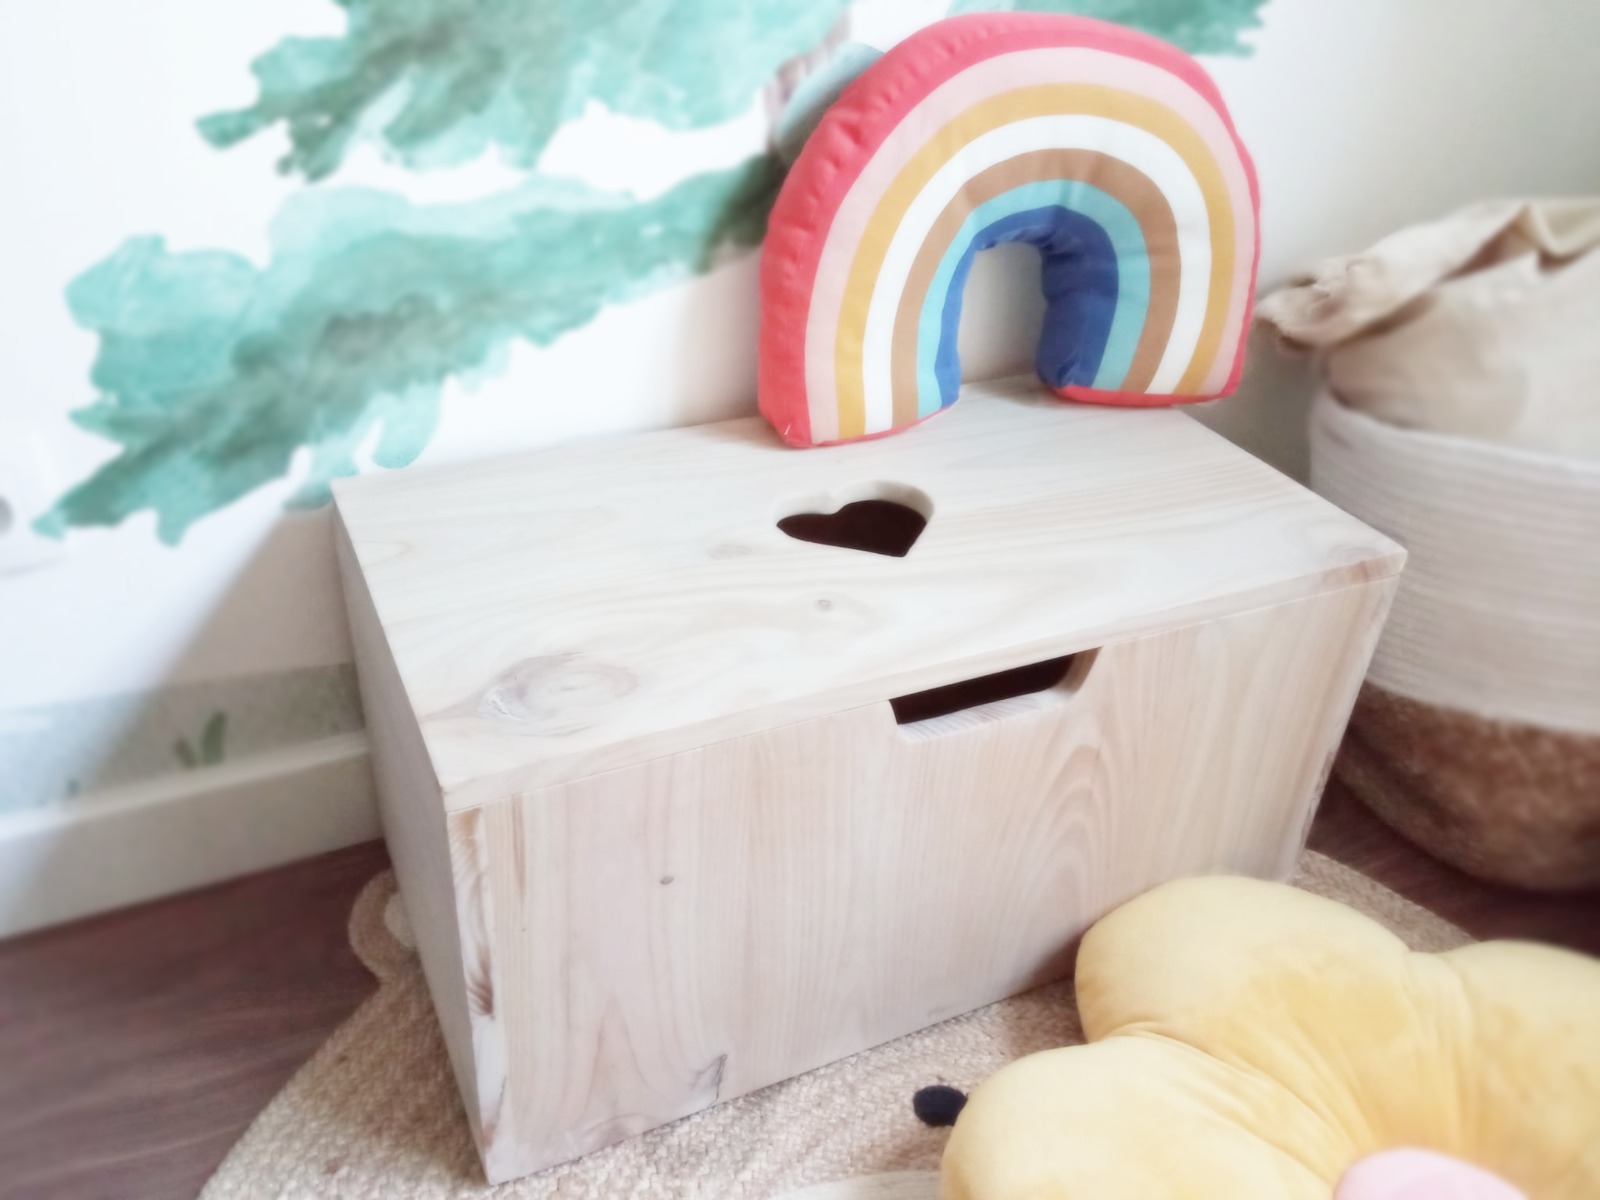 Baúl de madera con el detalle del corazón - Baúl Infantil - Baúl almacenaje  - Mobiliario Infantil - Decoración infantil - Juguetines